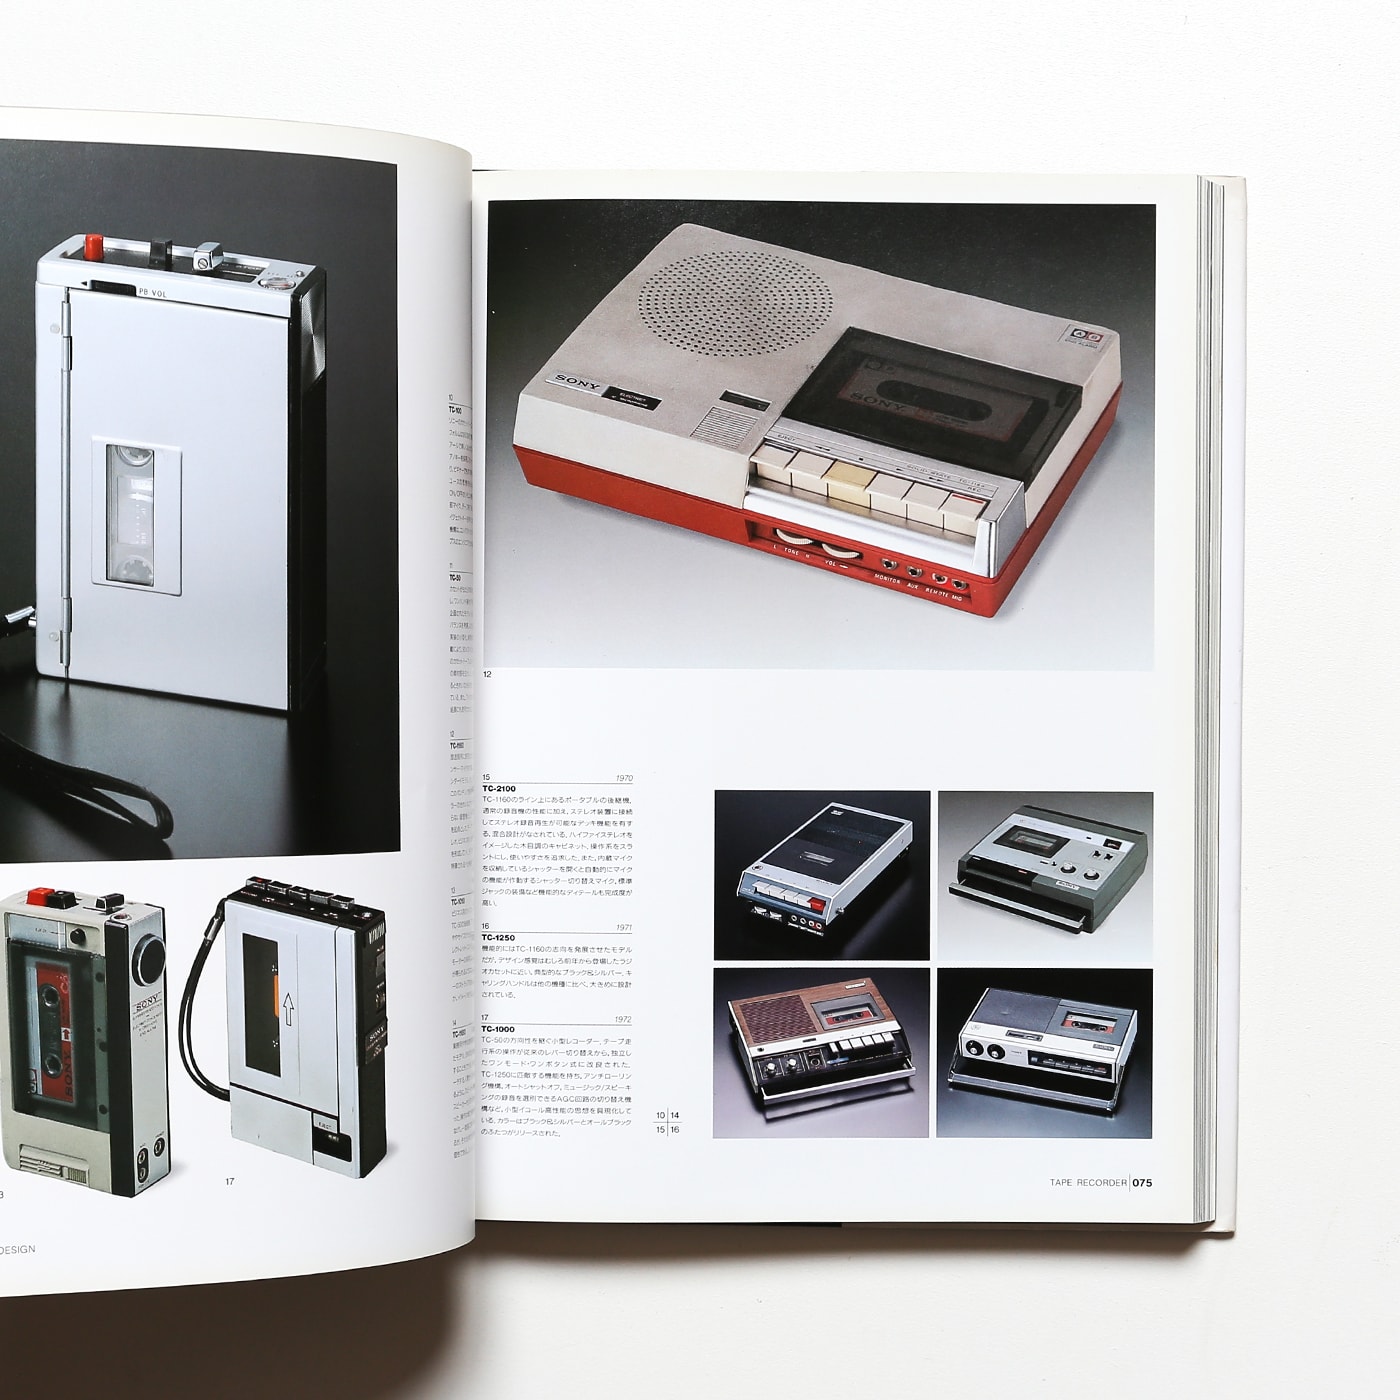 絶版「Sony Design（ソニーデザイン）」1993年 朝日ソノラマデザイン